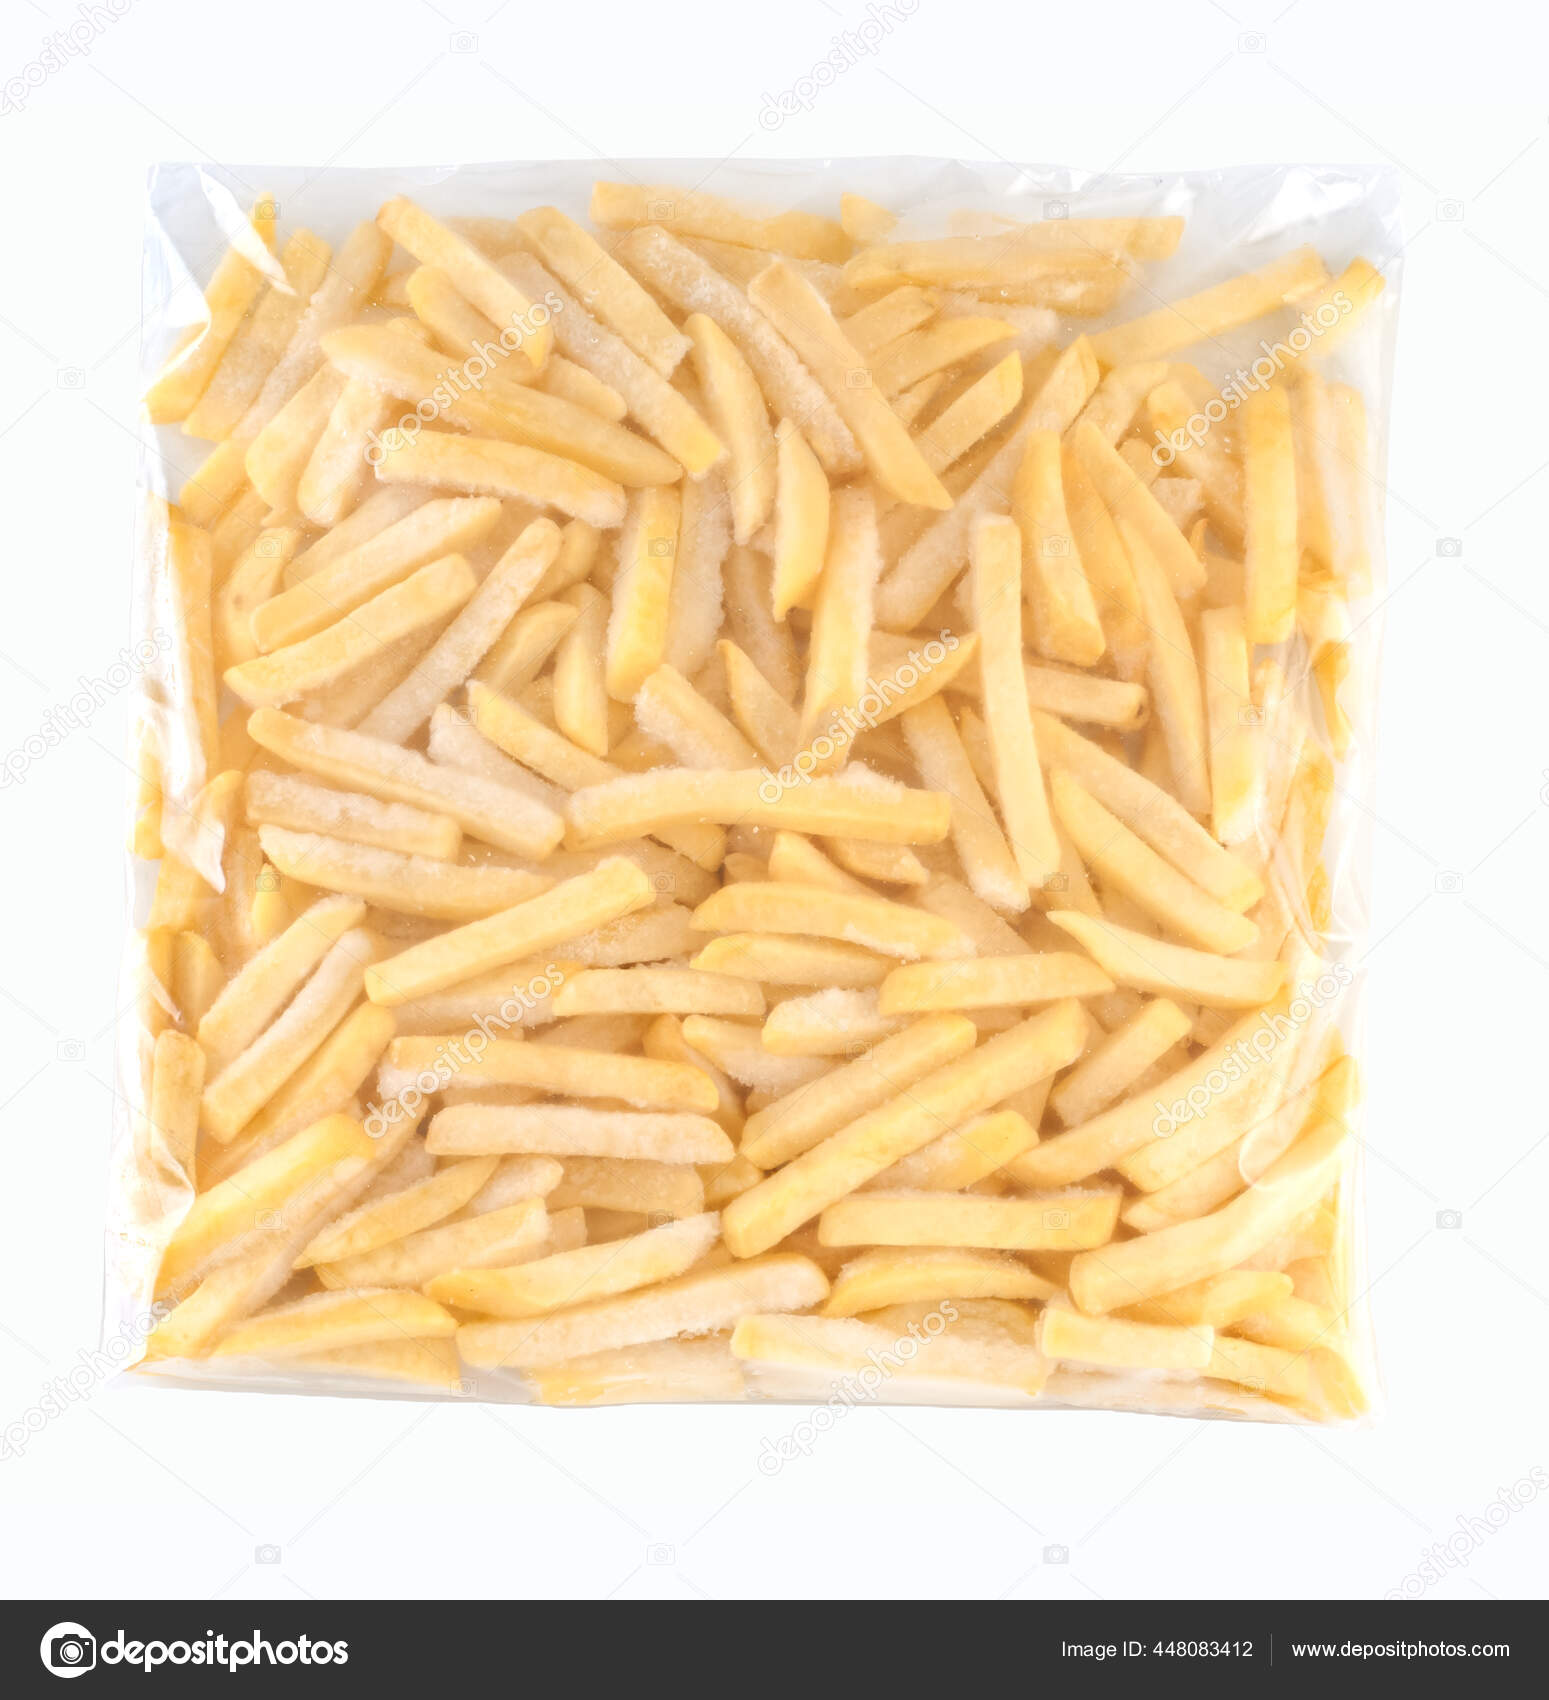 fries bag